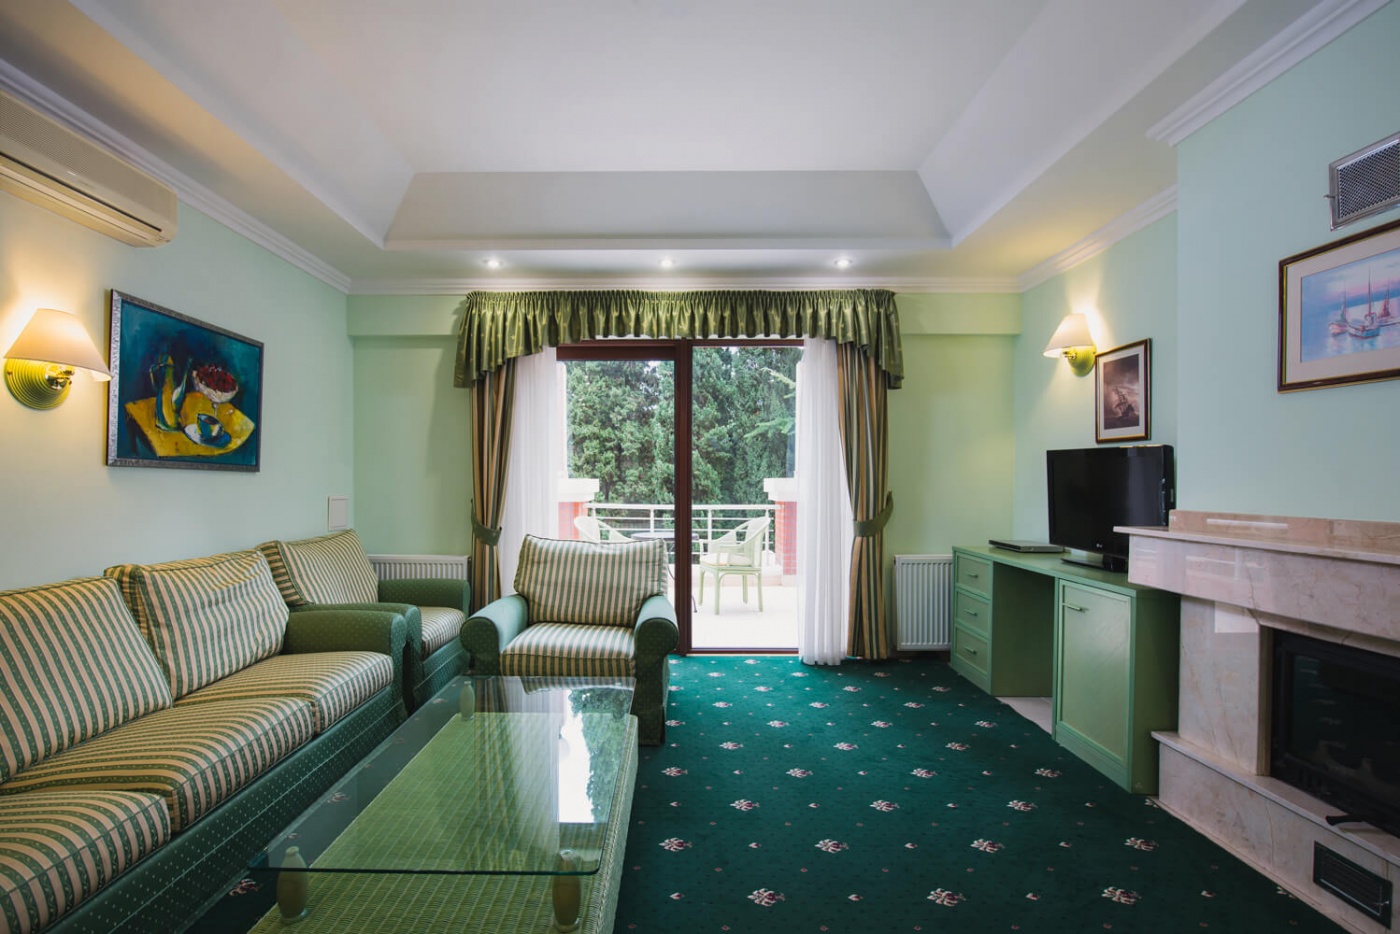  Отель «More Spa & Resort» Республика Крым Дуплекс с двумя спальнями, фото 5